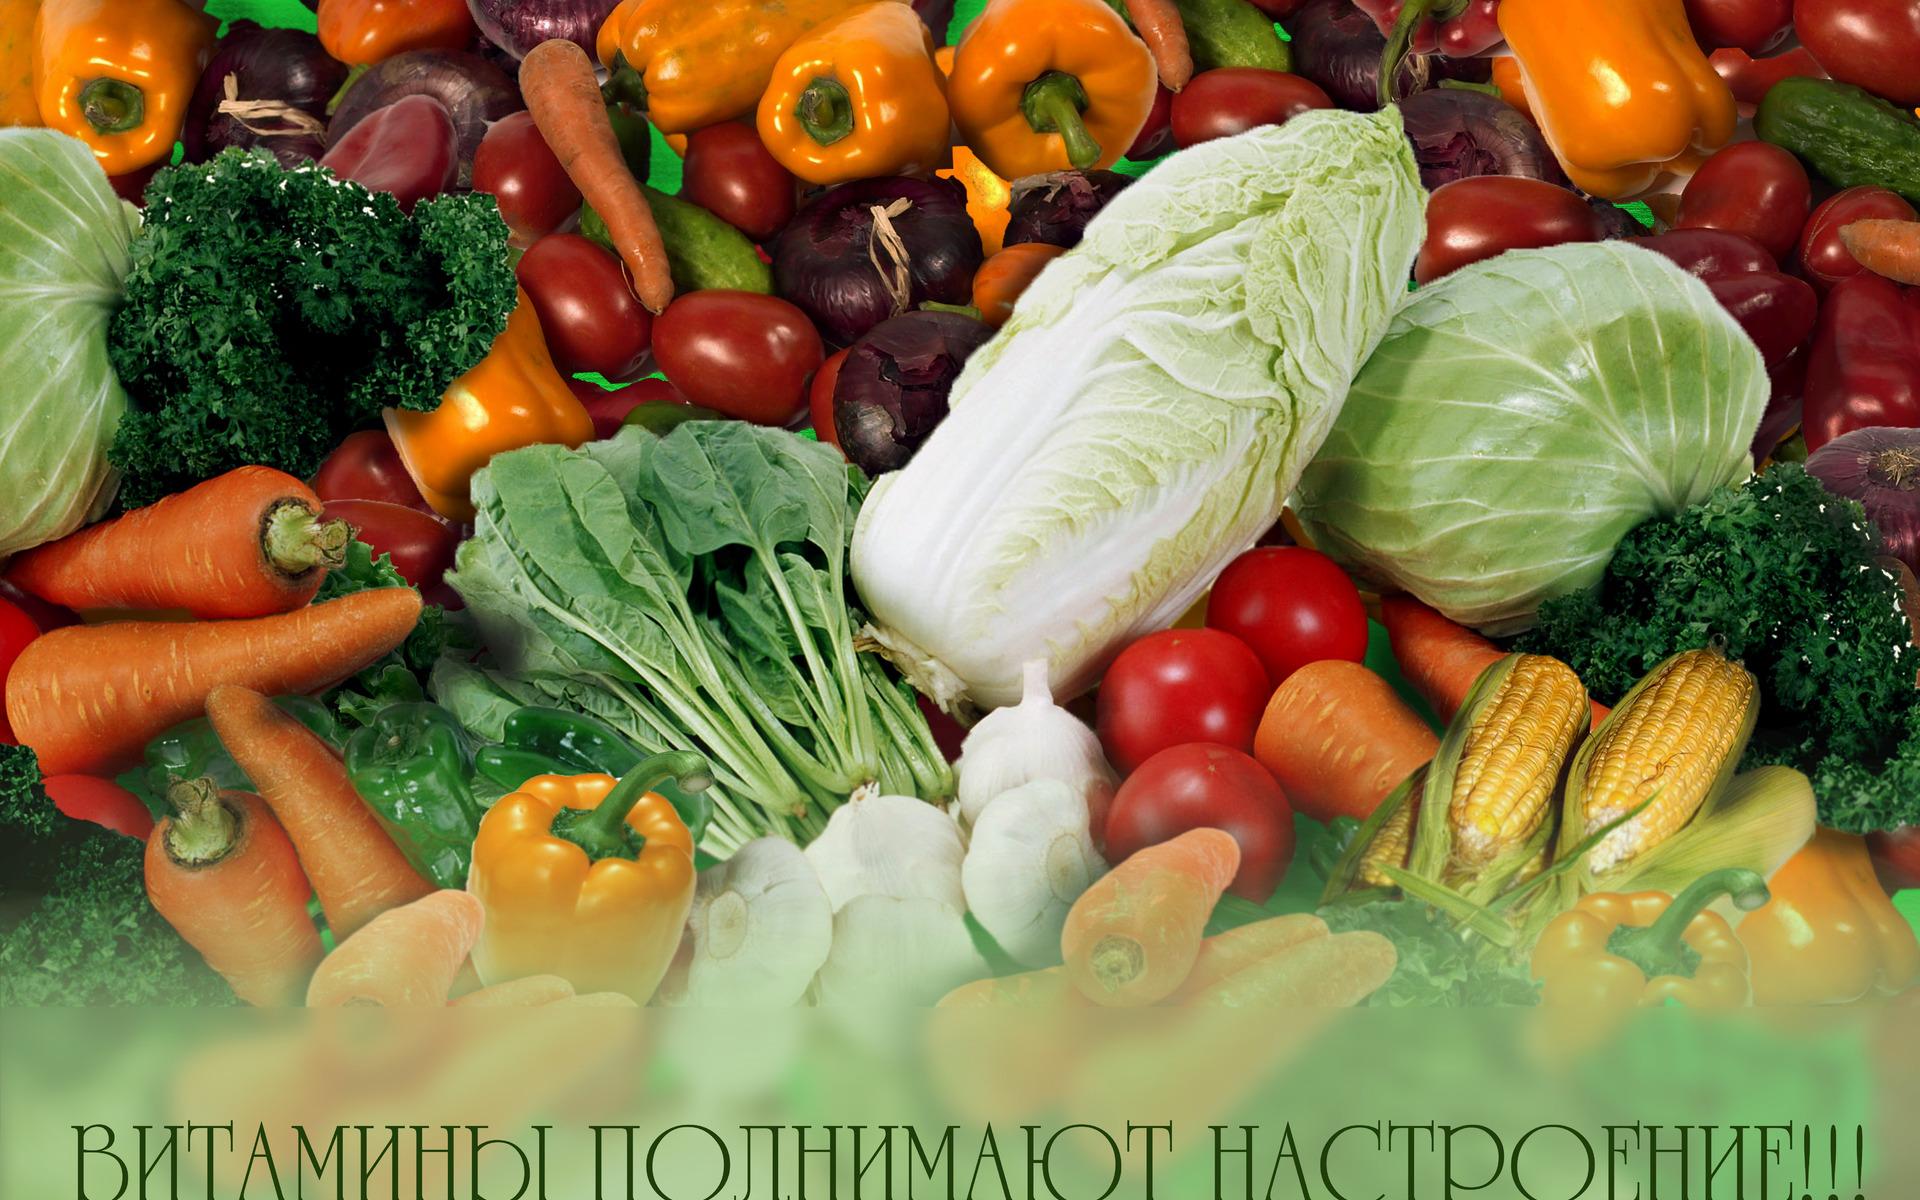 Витамины в свежих овощах. Овощи и фрукты. Продукты овощи. Красивые овощи. Витамины фруктов и овощей.